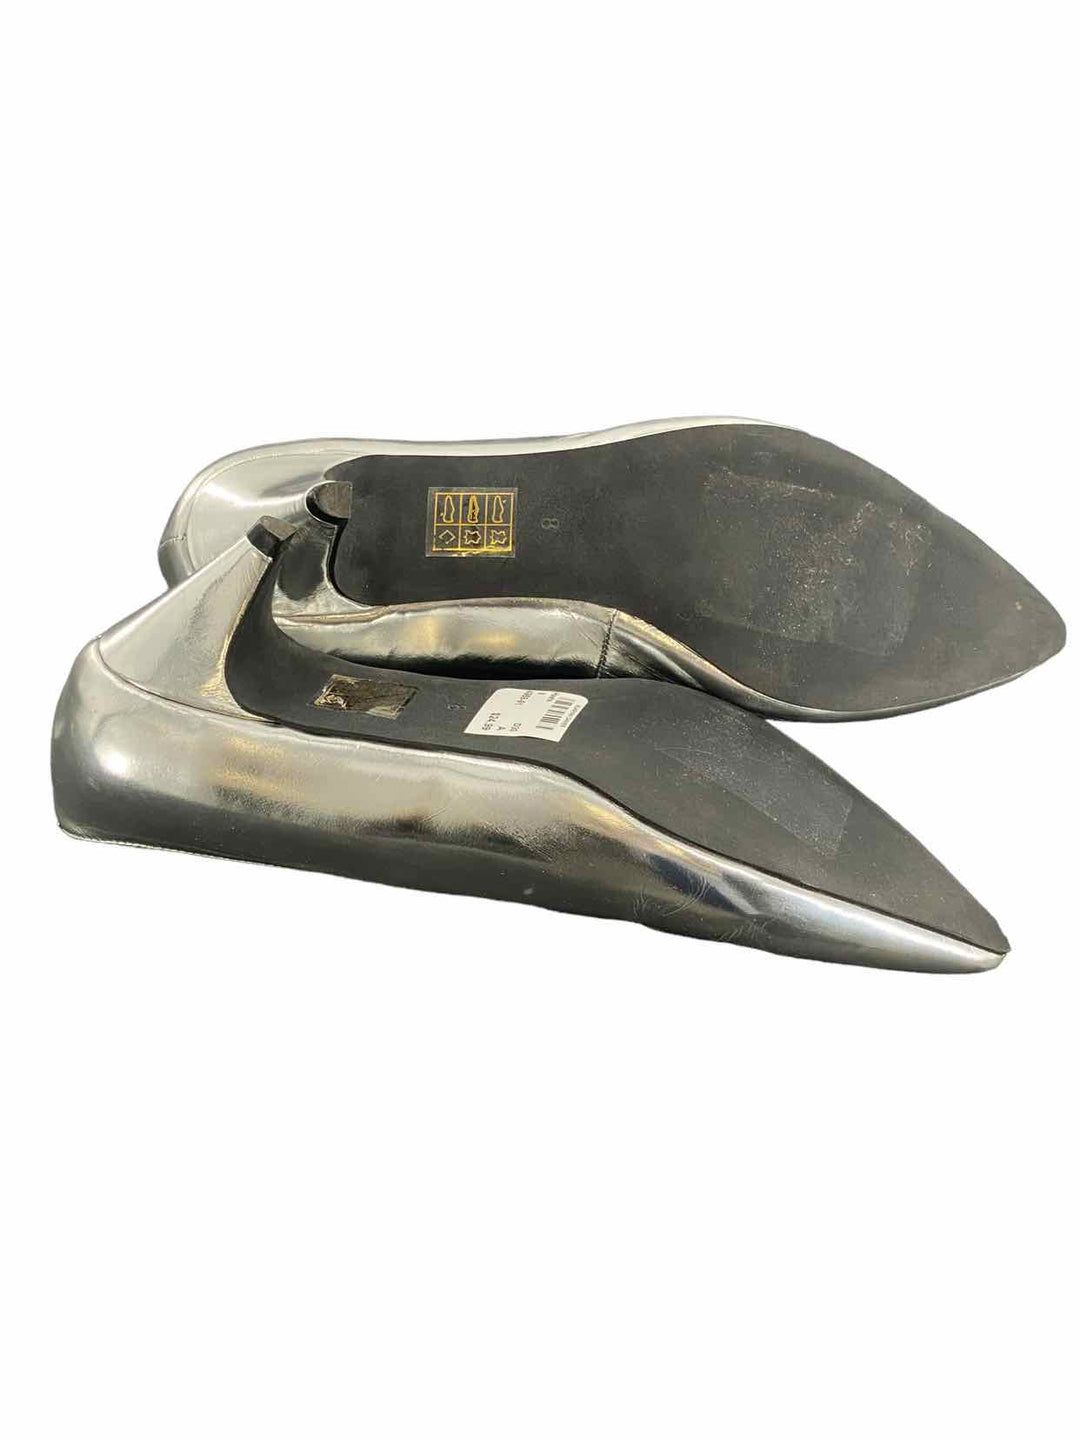 Jeffrey Campbell Shoe Size 8 Silver Heels